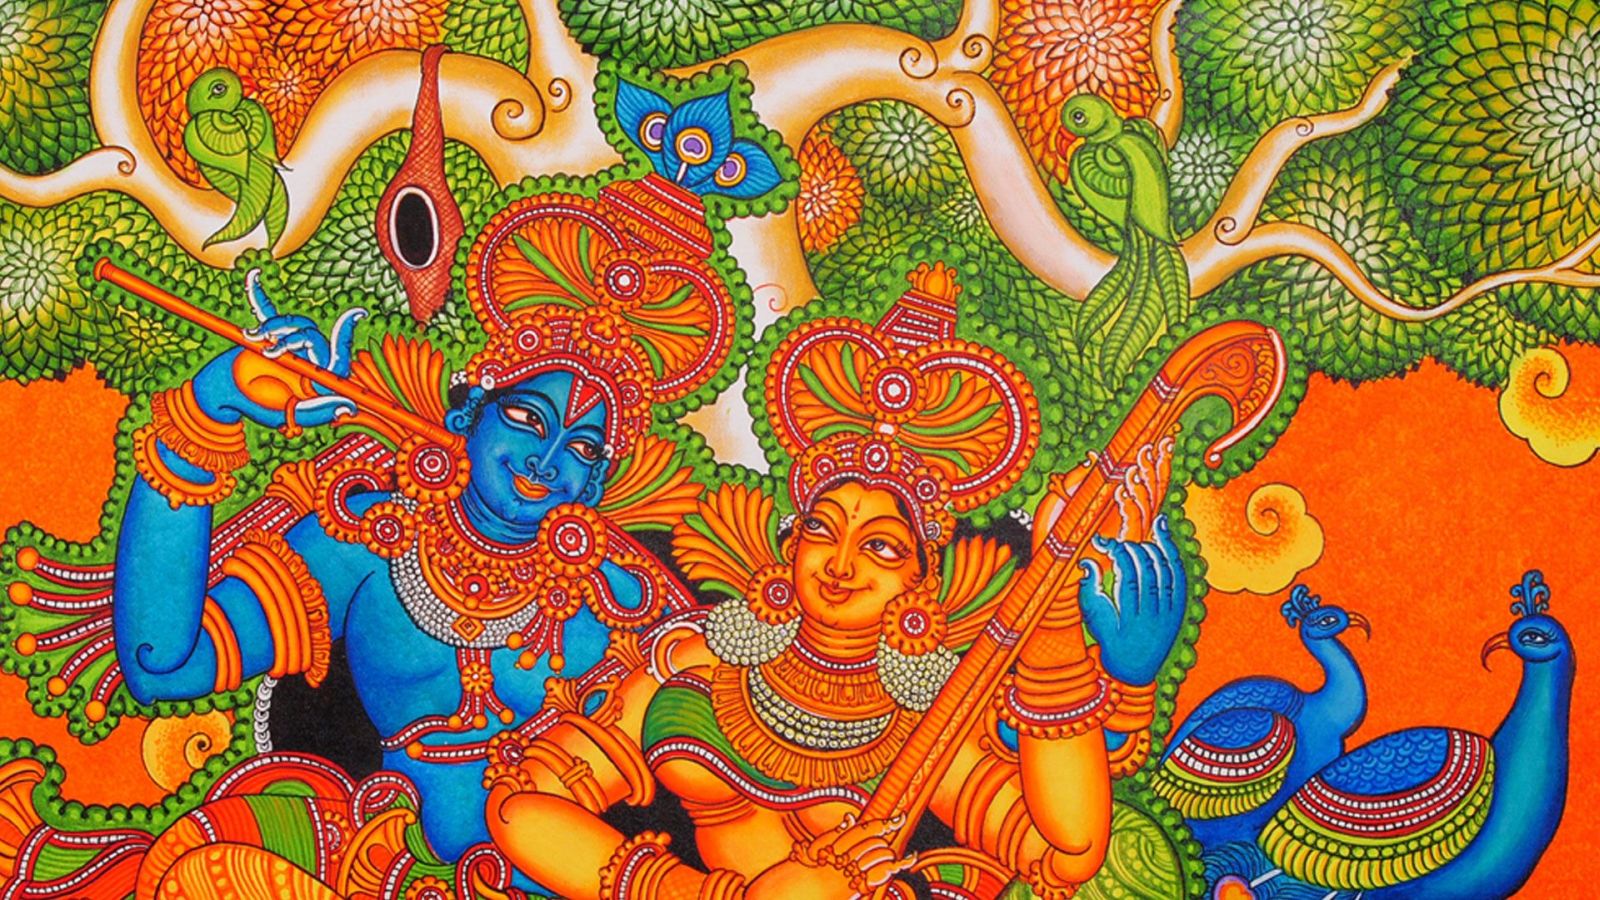 beautiful kerala mural painting by vr krishnan